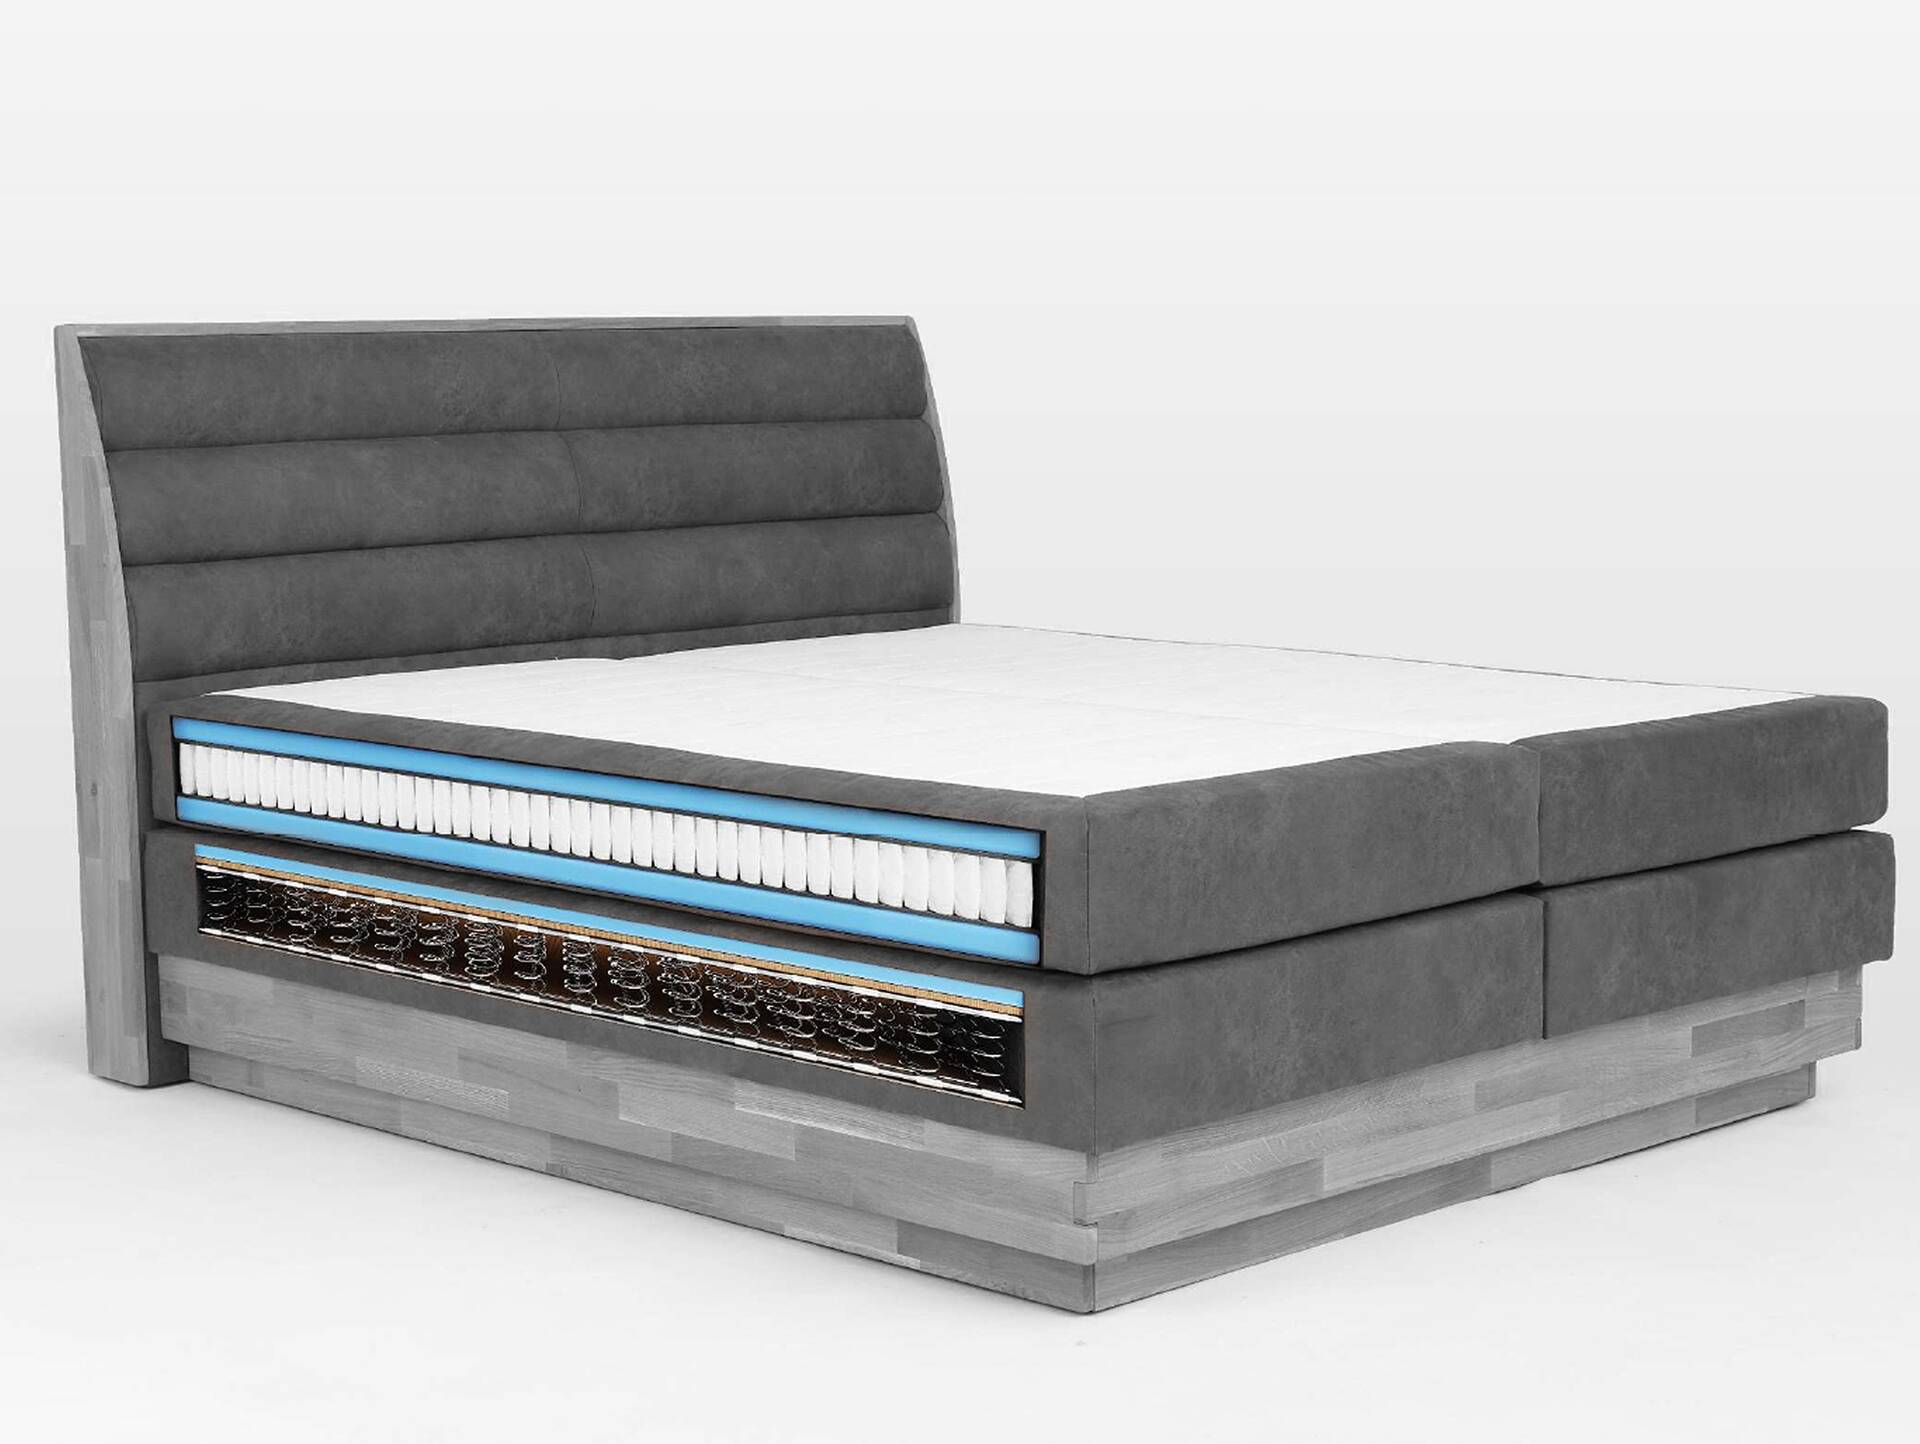 MAILO Boxspringbett mit Bettkasten, Material Massivholz Eiche/ Bezug Stoff in 2 Farben 160 x 200 cm | Braun